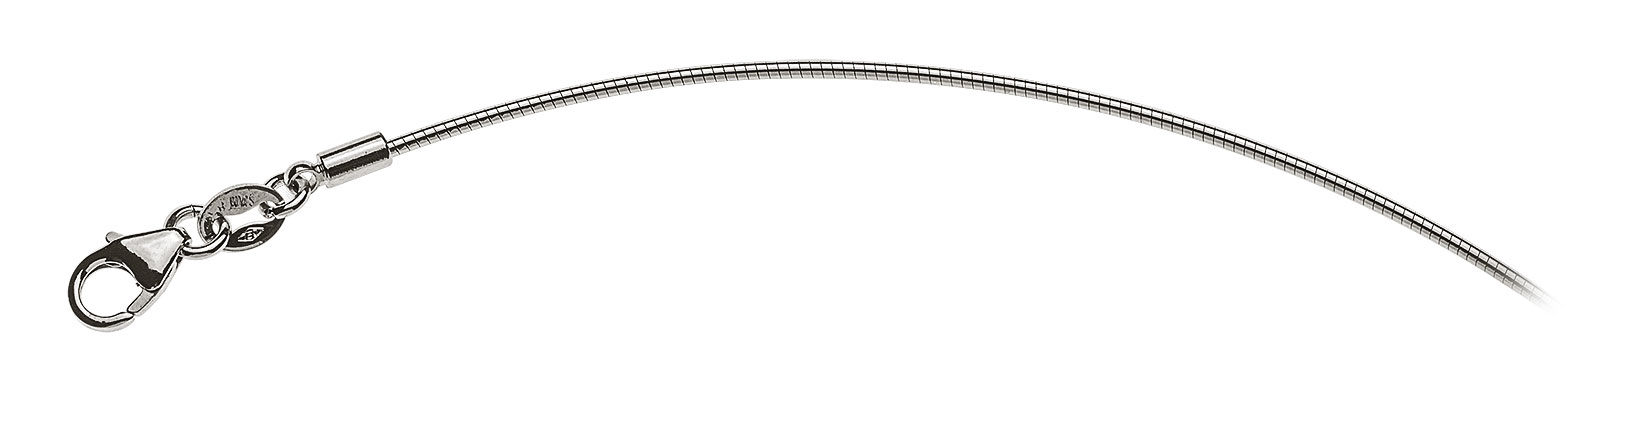 AURONOS Prestige White Gold 18K Omega Necklace 42cm 1.0mm